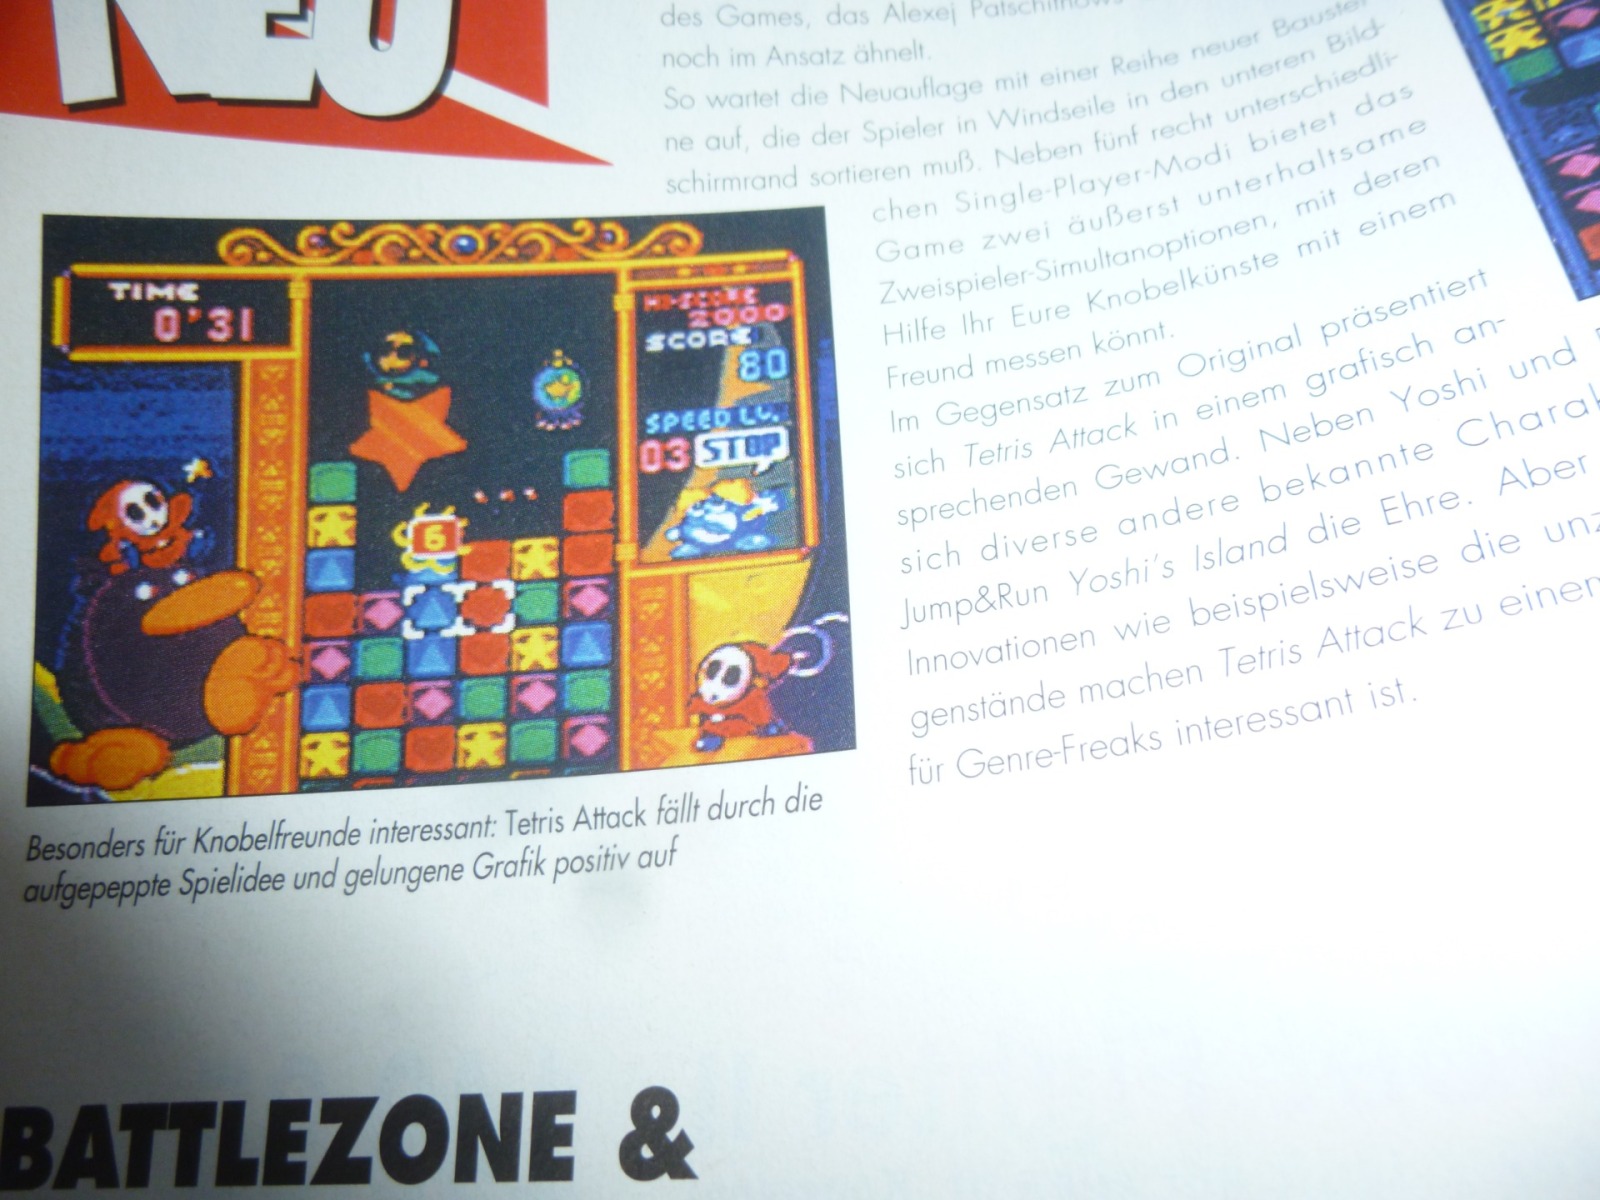 TOTAL Das unabhängige Magazin - 100 Nintendo - Ausgabe 10/96 1996 7